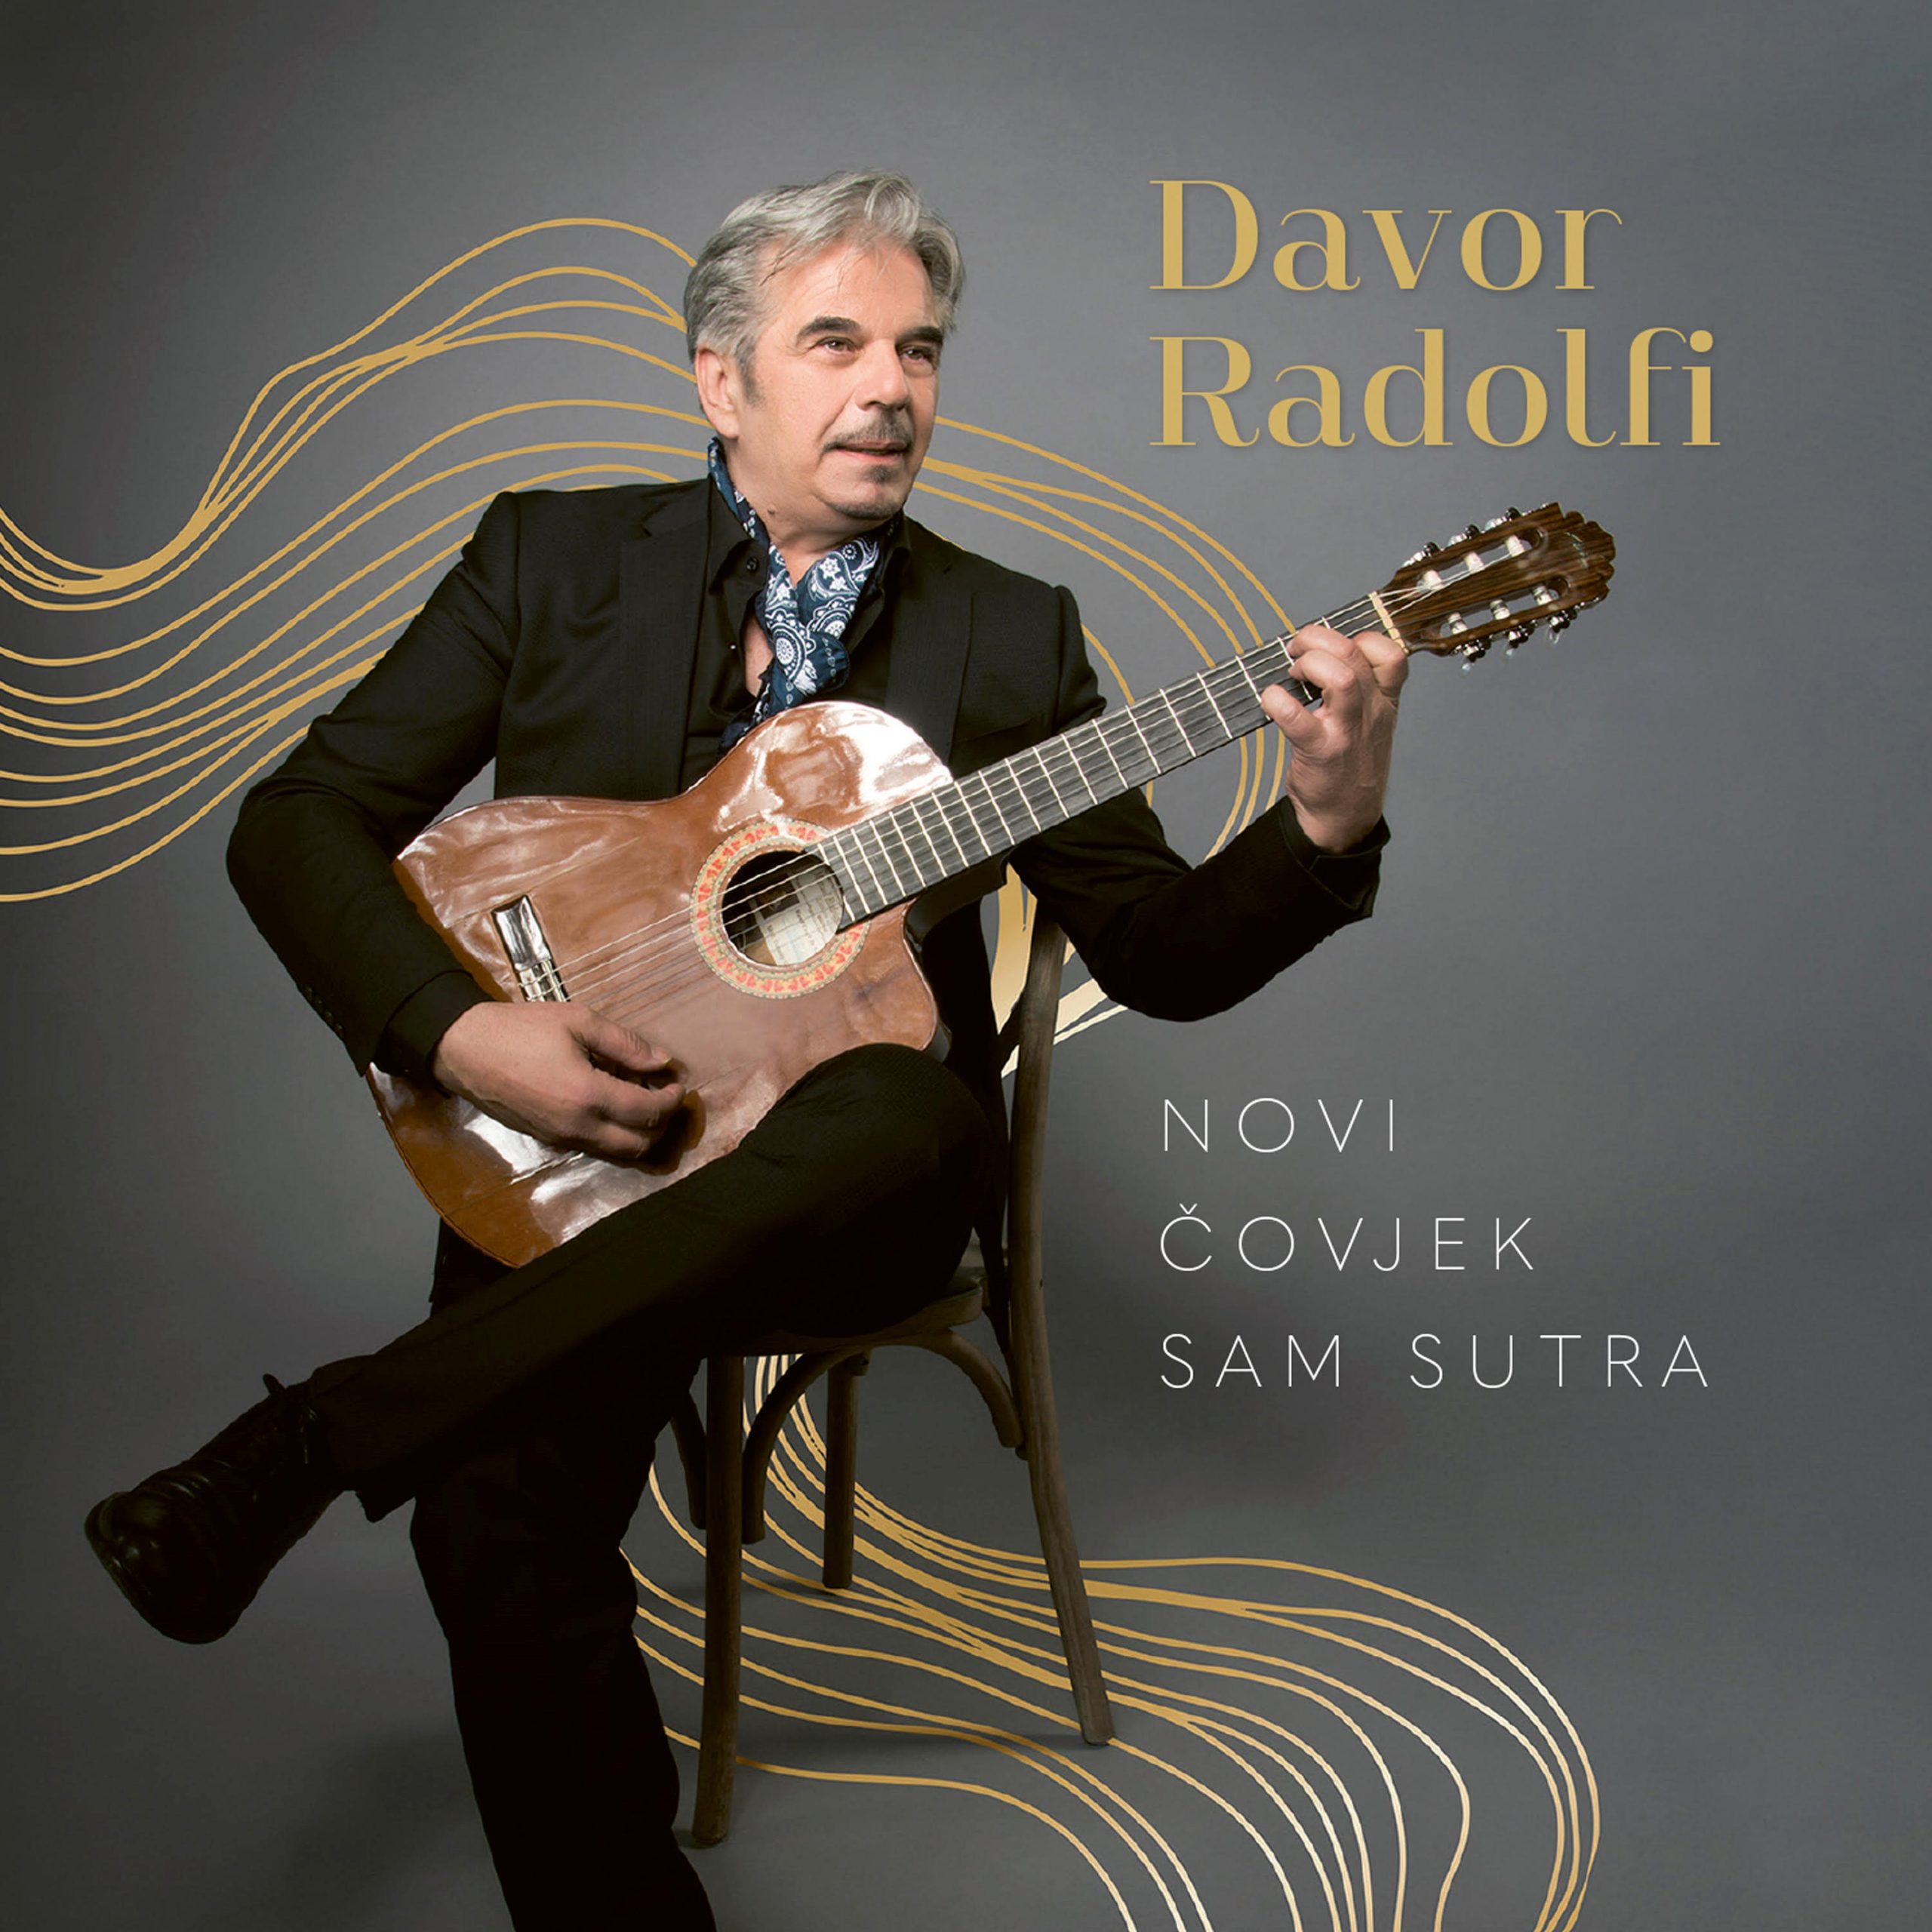 Novi album Davora Radolfija “Novi čovjek sam sutra” je u prodaji